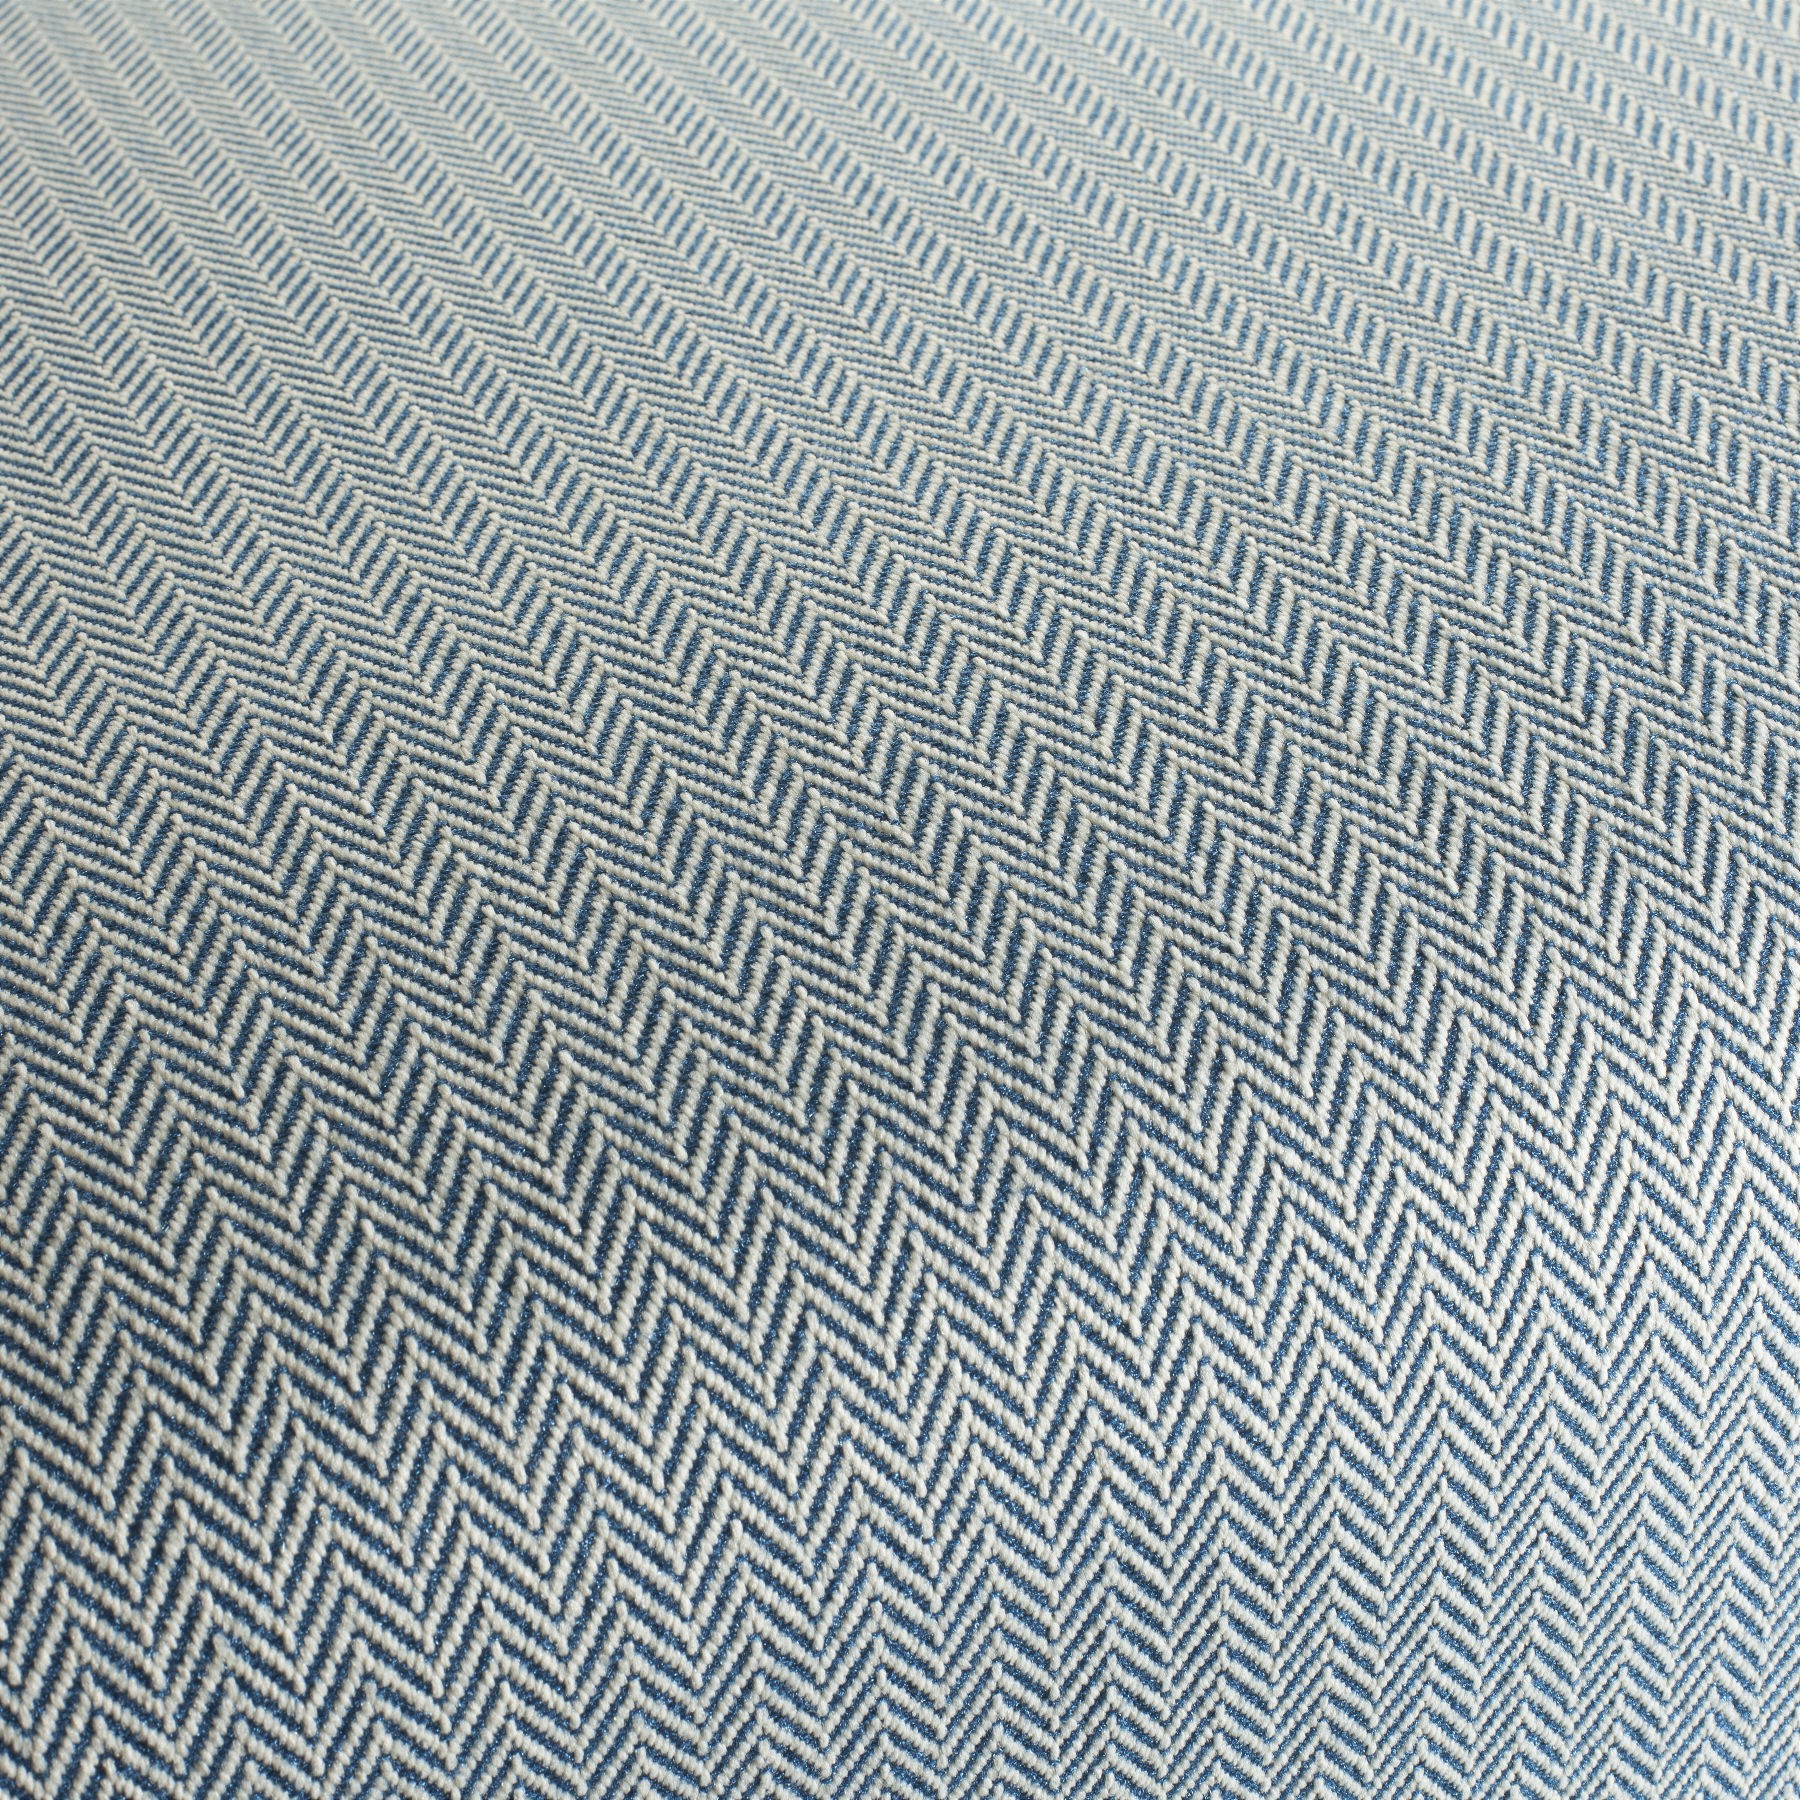 Amagansett outdoor fabric by Jab référence 9-2400